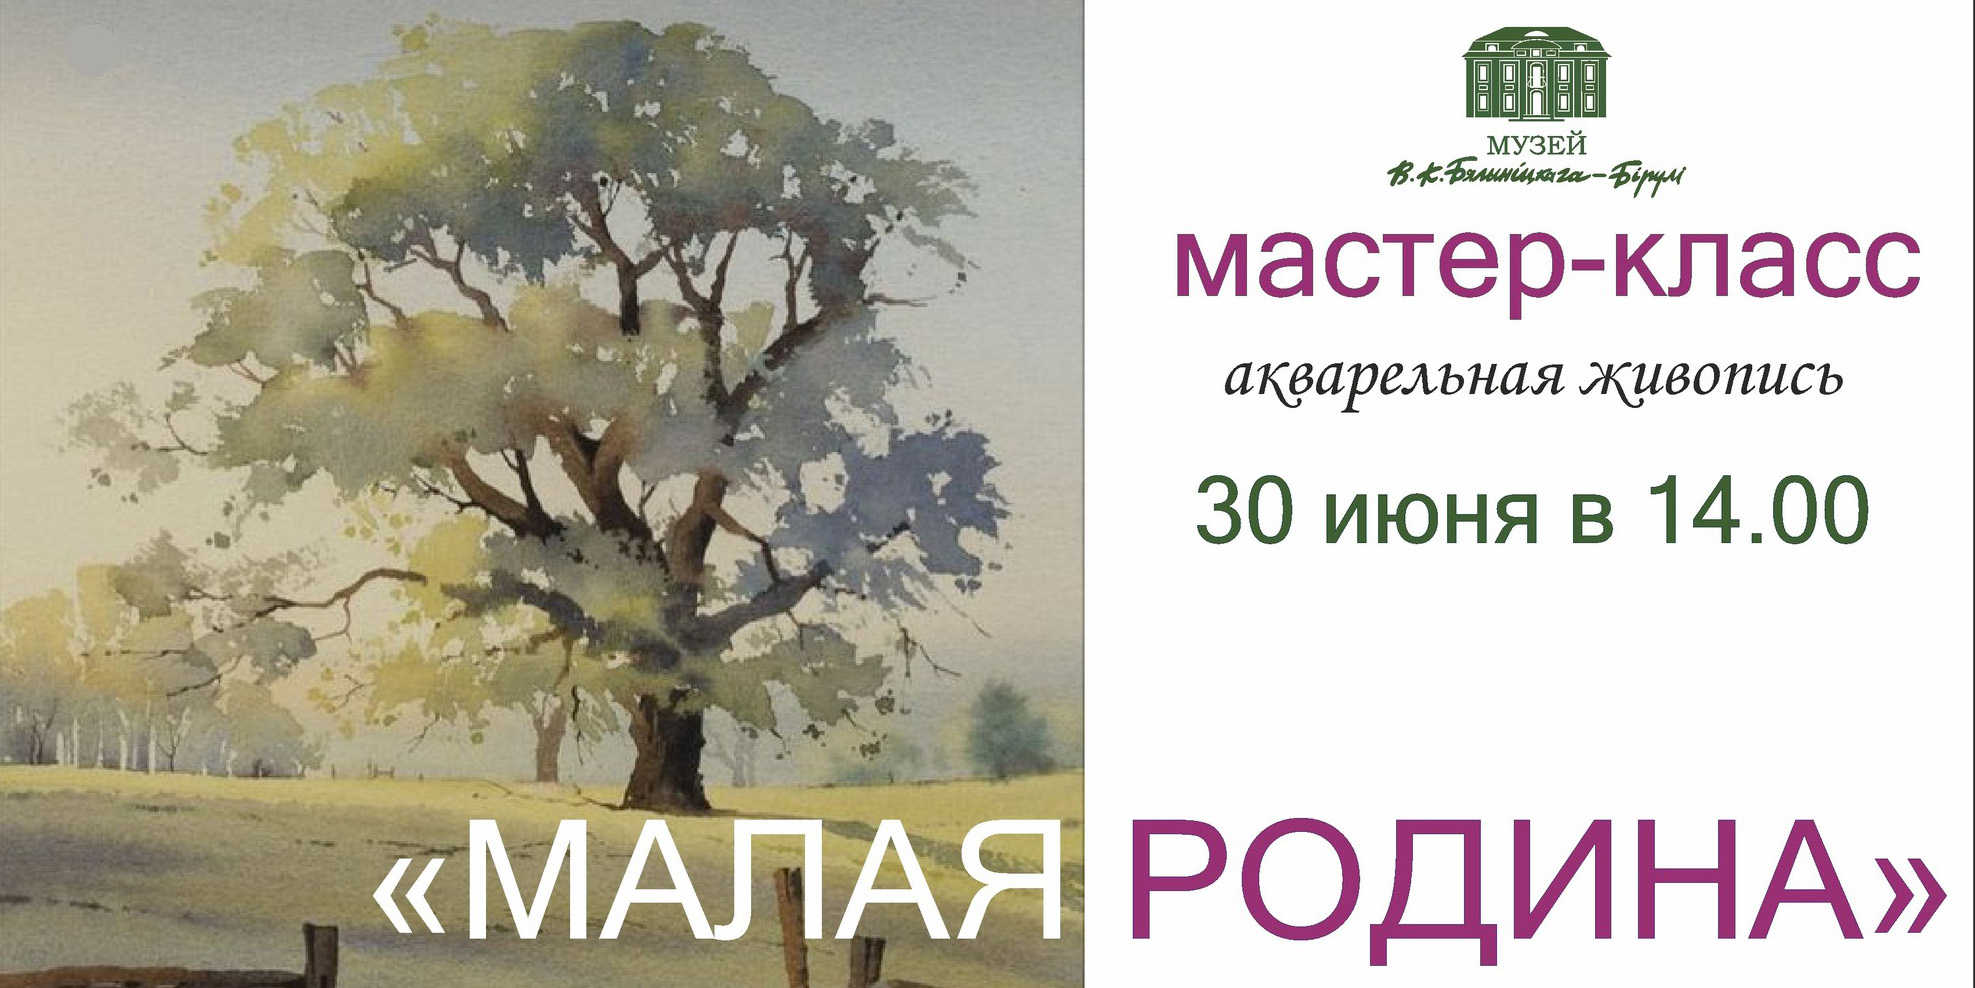 Мастер-класс по акварельной живописи пройдет в Могилеве 30 июня